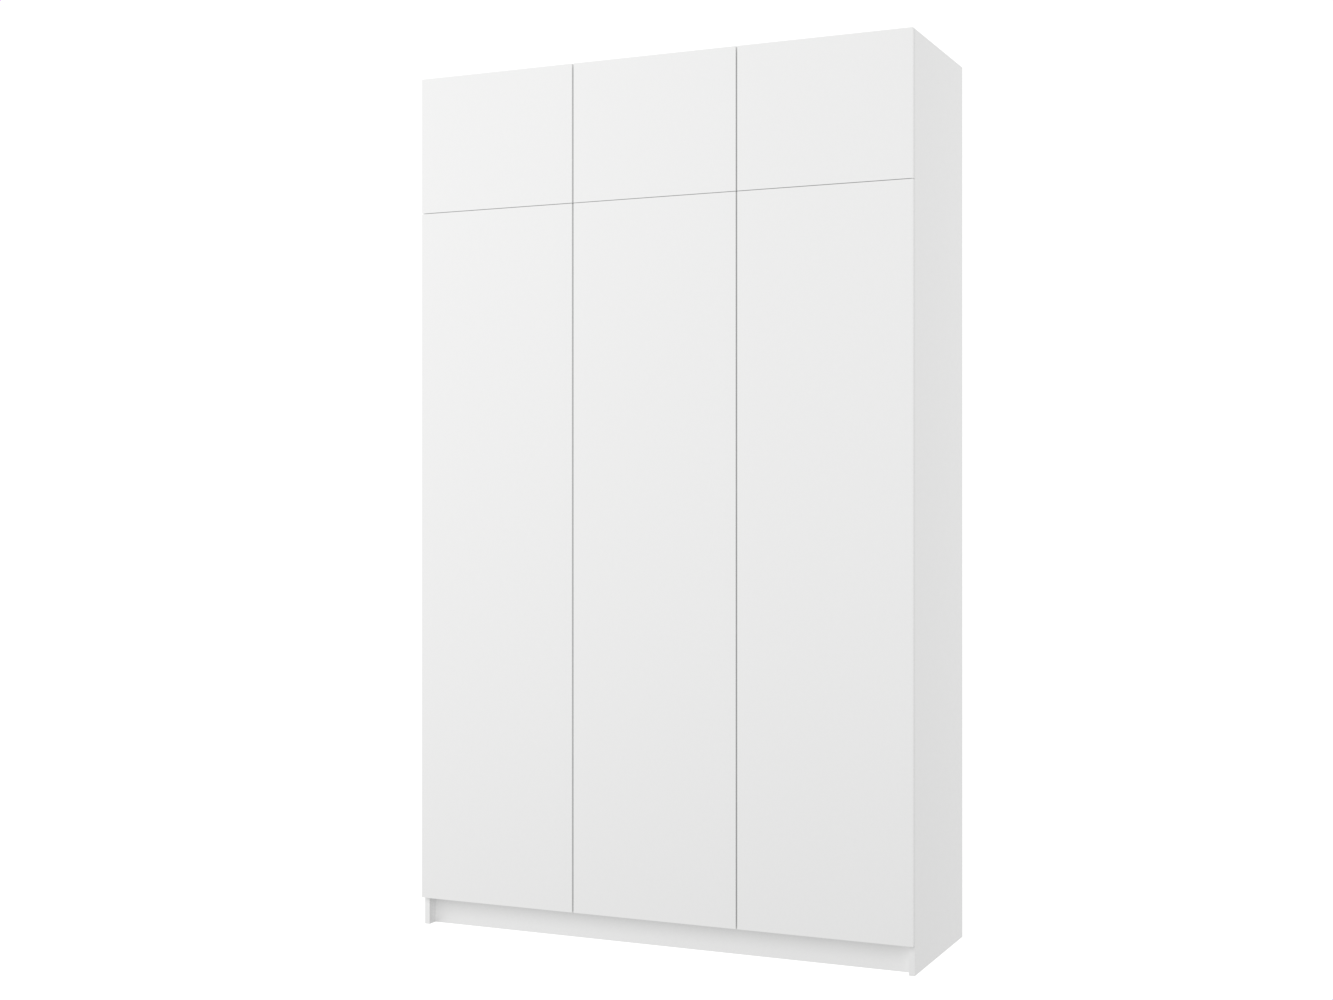 Распашной шкаф Пакс Фардал 131 white ИКЕА (IKEA) изображение товара